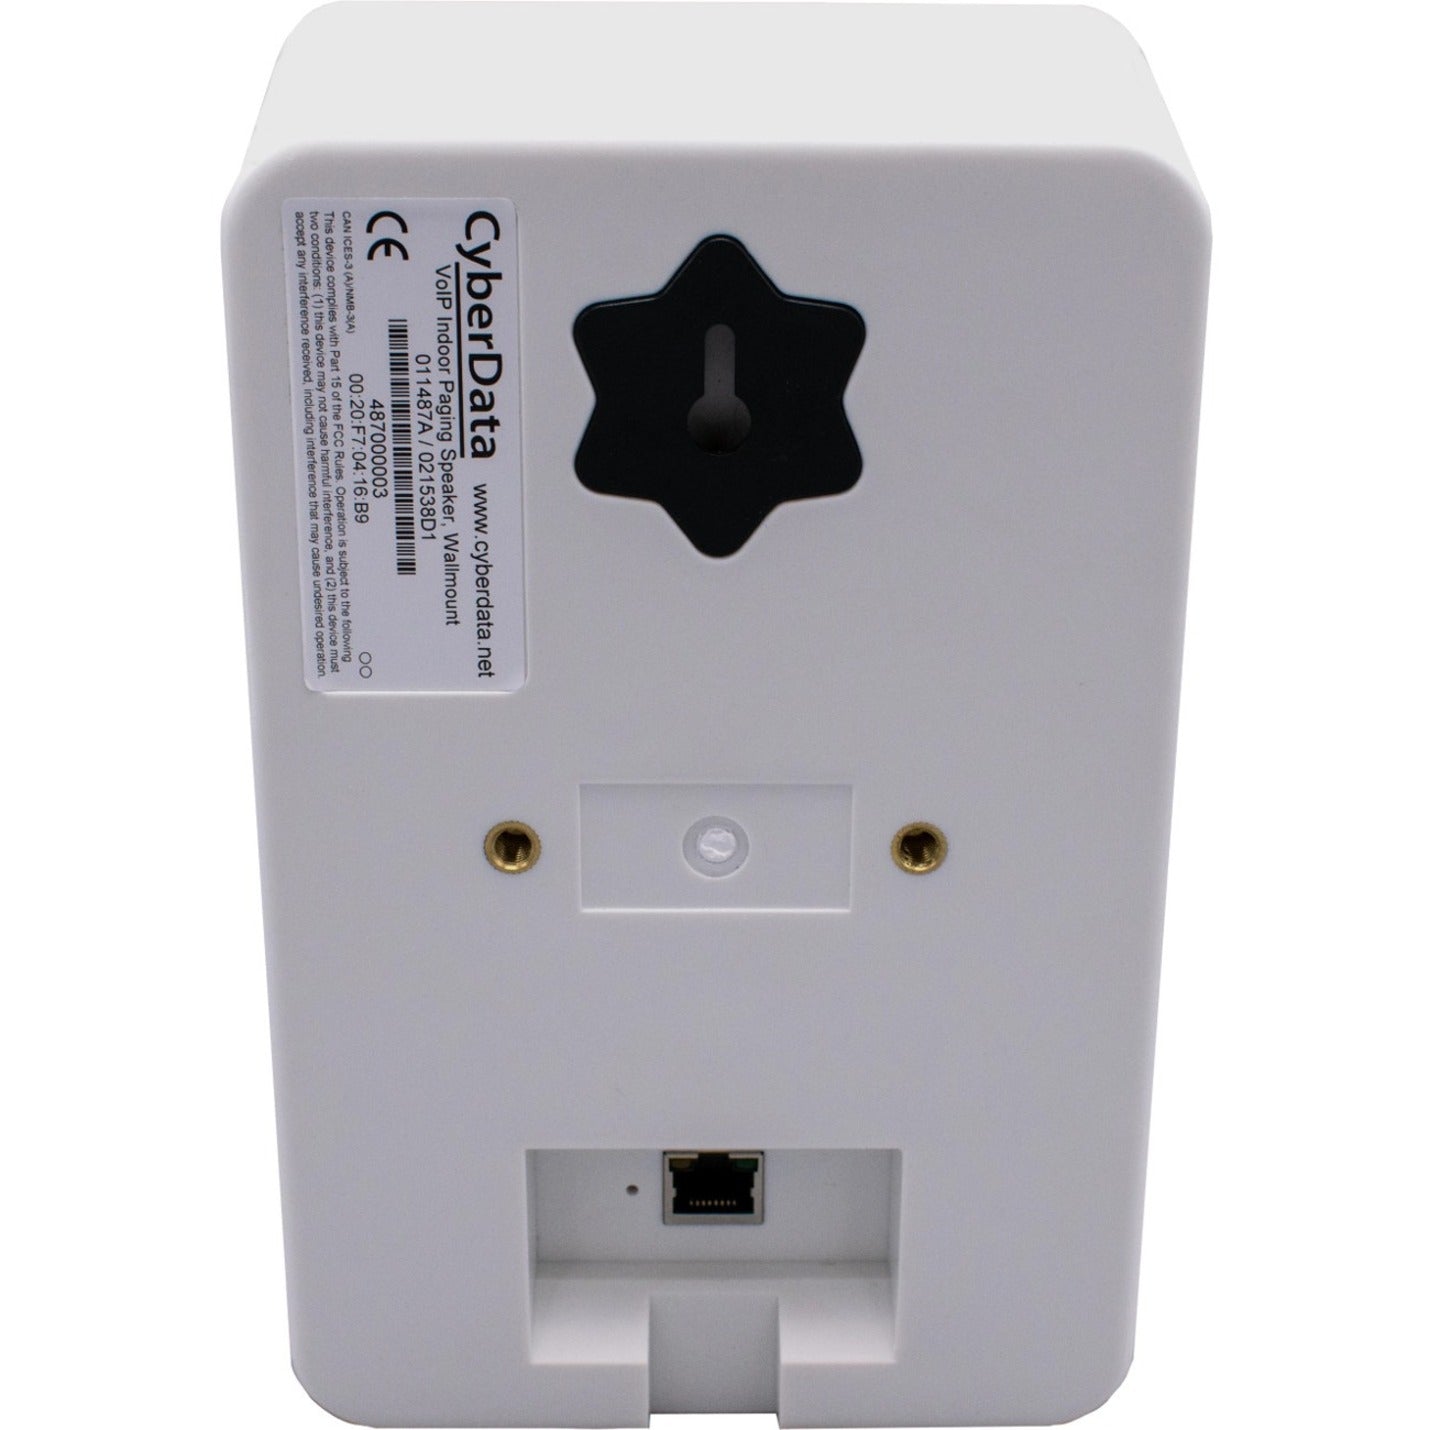 CyberData 011487 Multicast Wall Mount Speaker, White - 2 Year Warranty, RoHS Certified, 98 dB Sensitivity